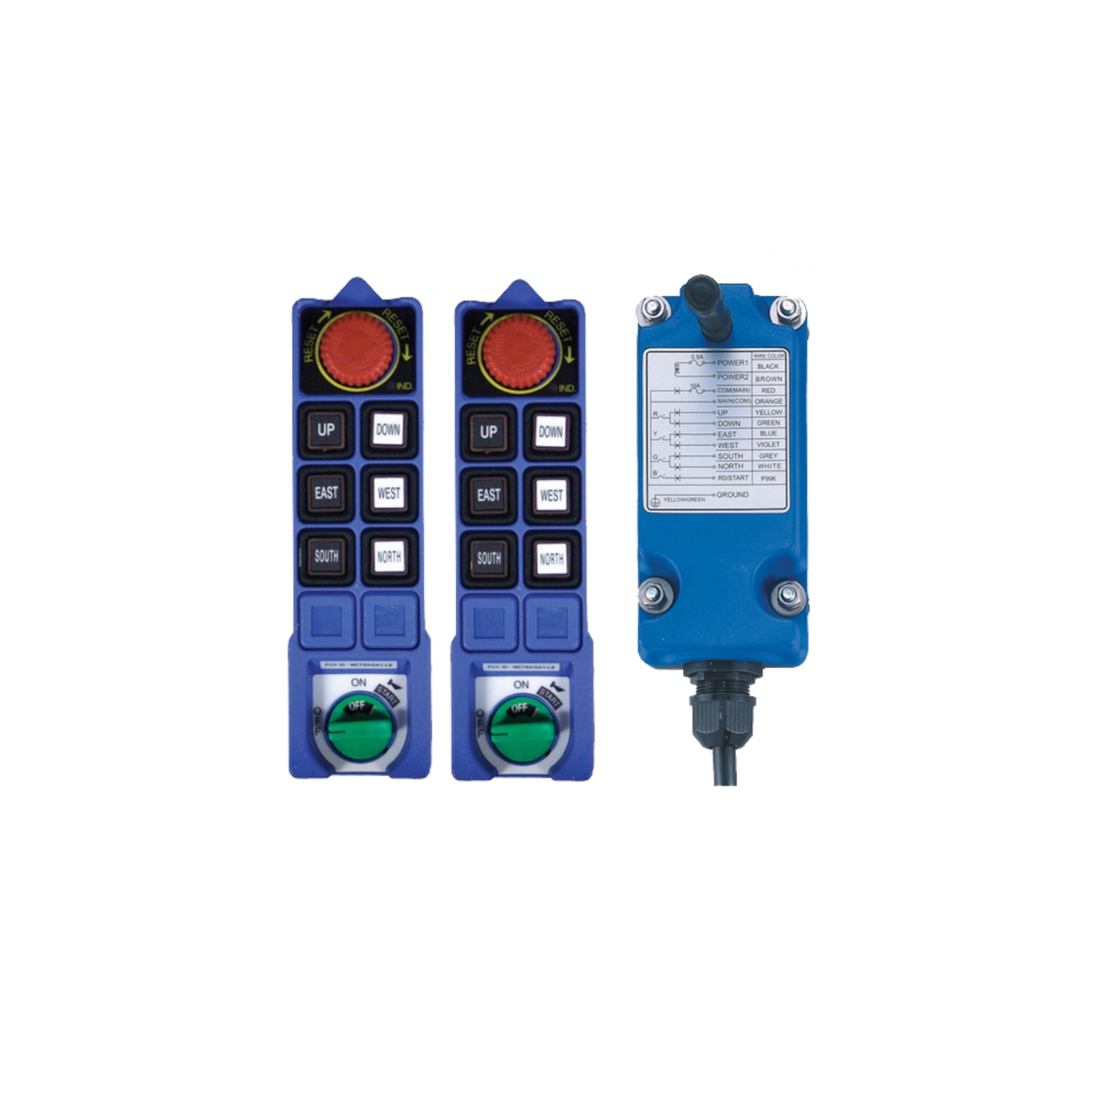 Radio Remote Control Kit, Saga Protean L8 Series, 6-Button, 1-Speed, 2 TX